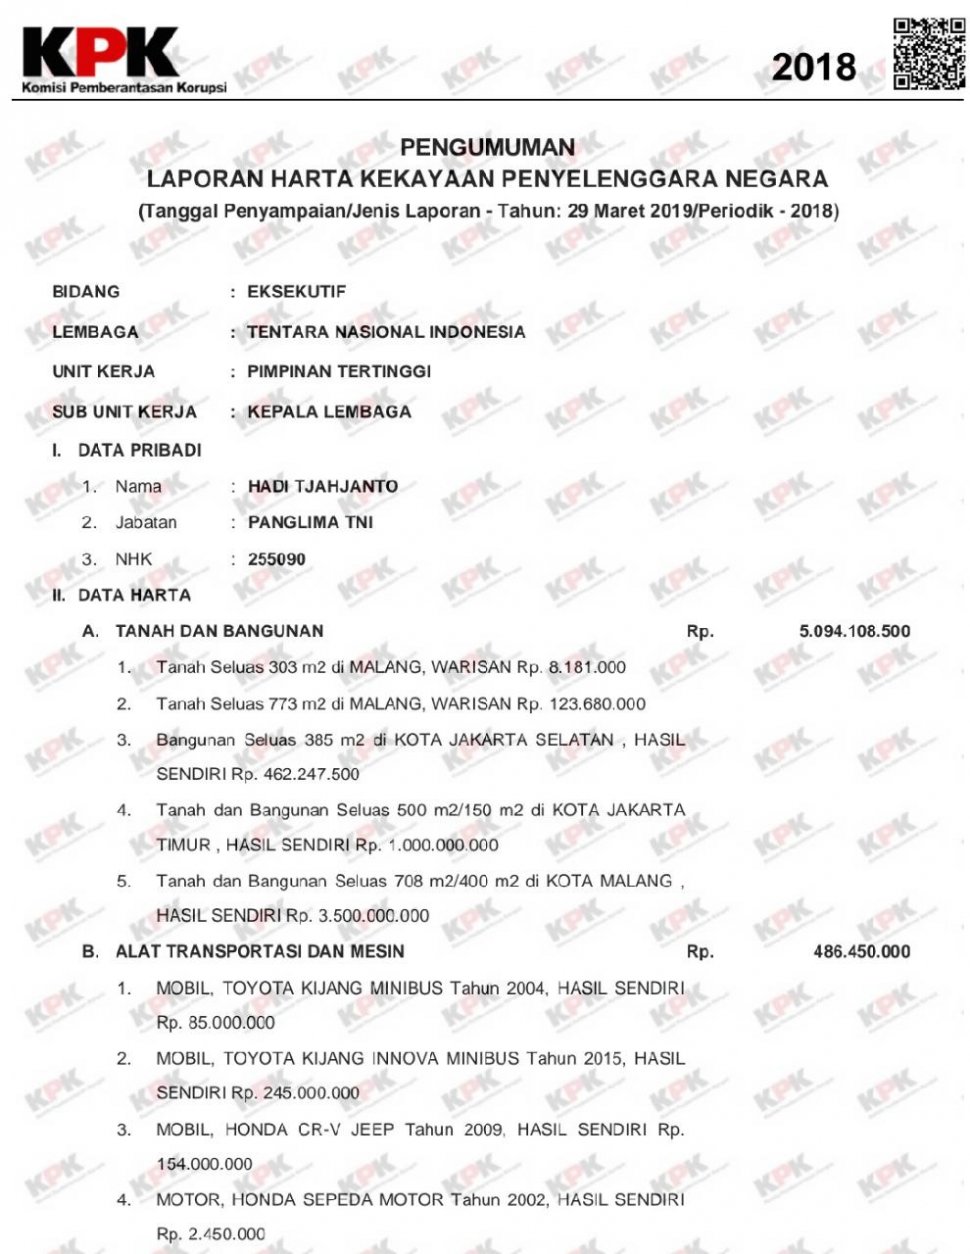 LHKPN Panglima TNI. (elhkpn.kpk.go.id)